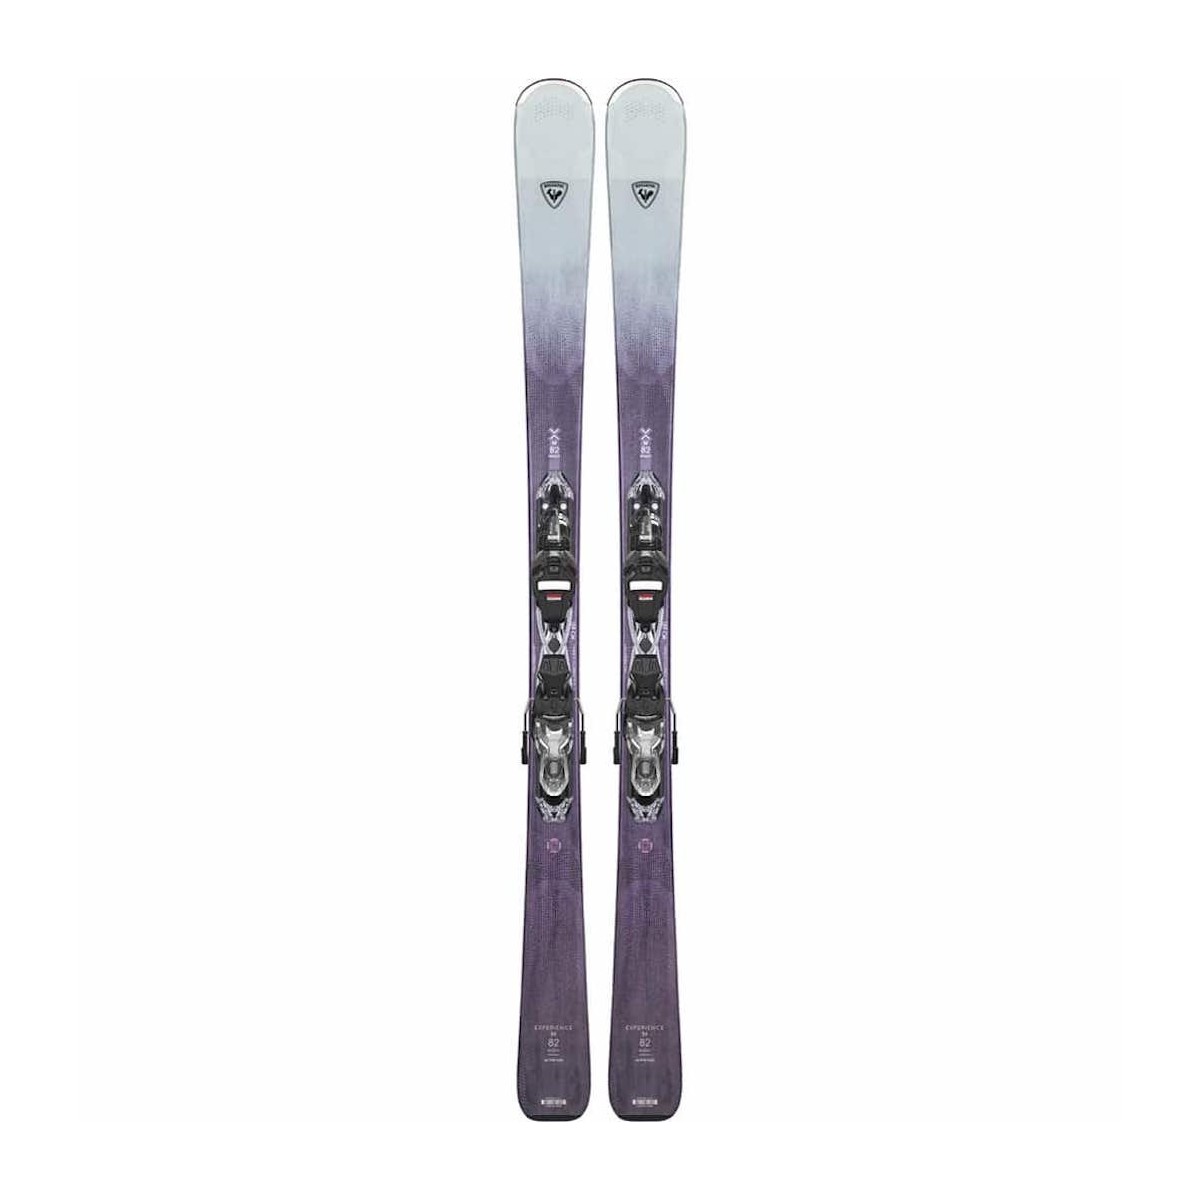 ROSSIGNOL EXPERIENCE W 82 BASALT W XP11 alpine skis